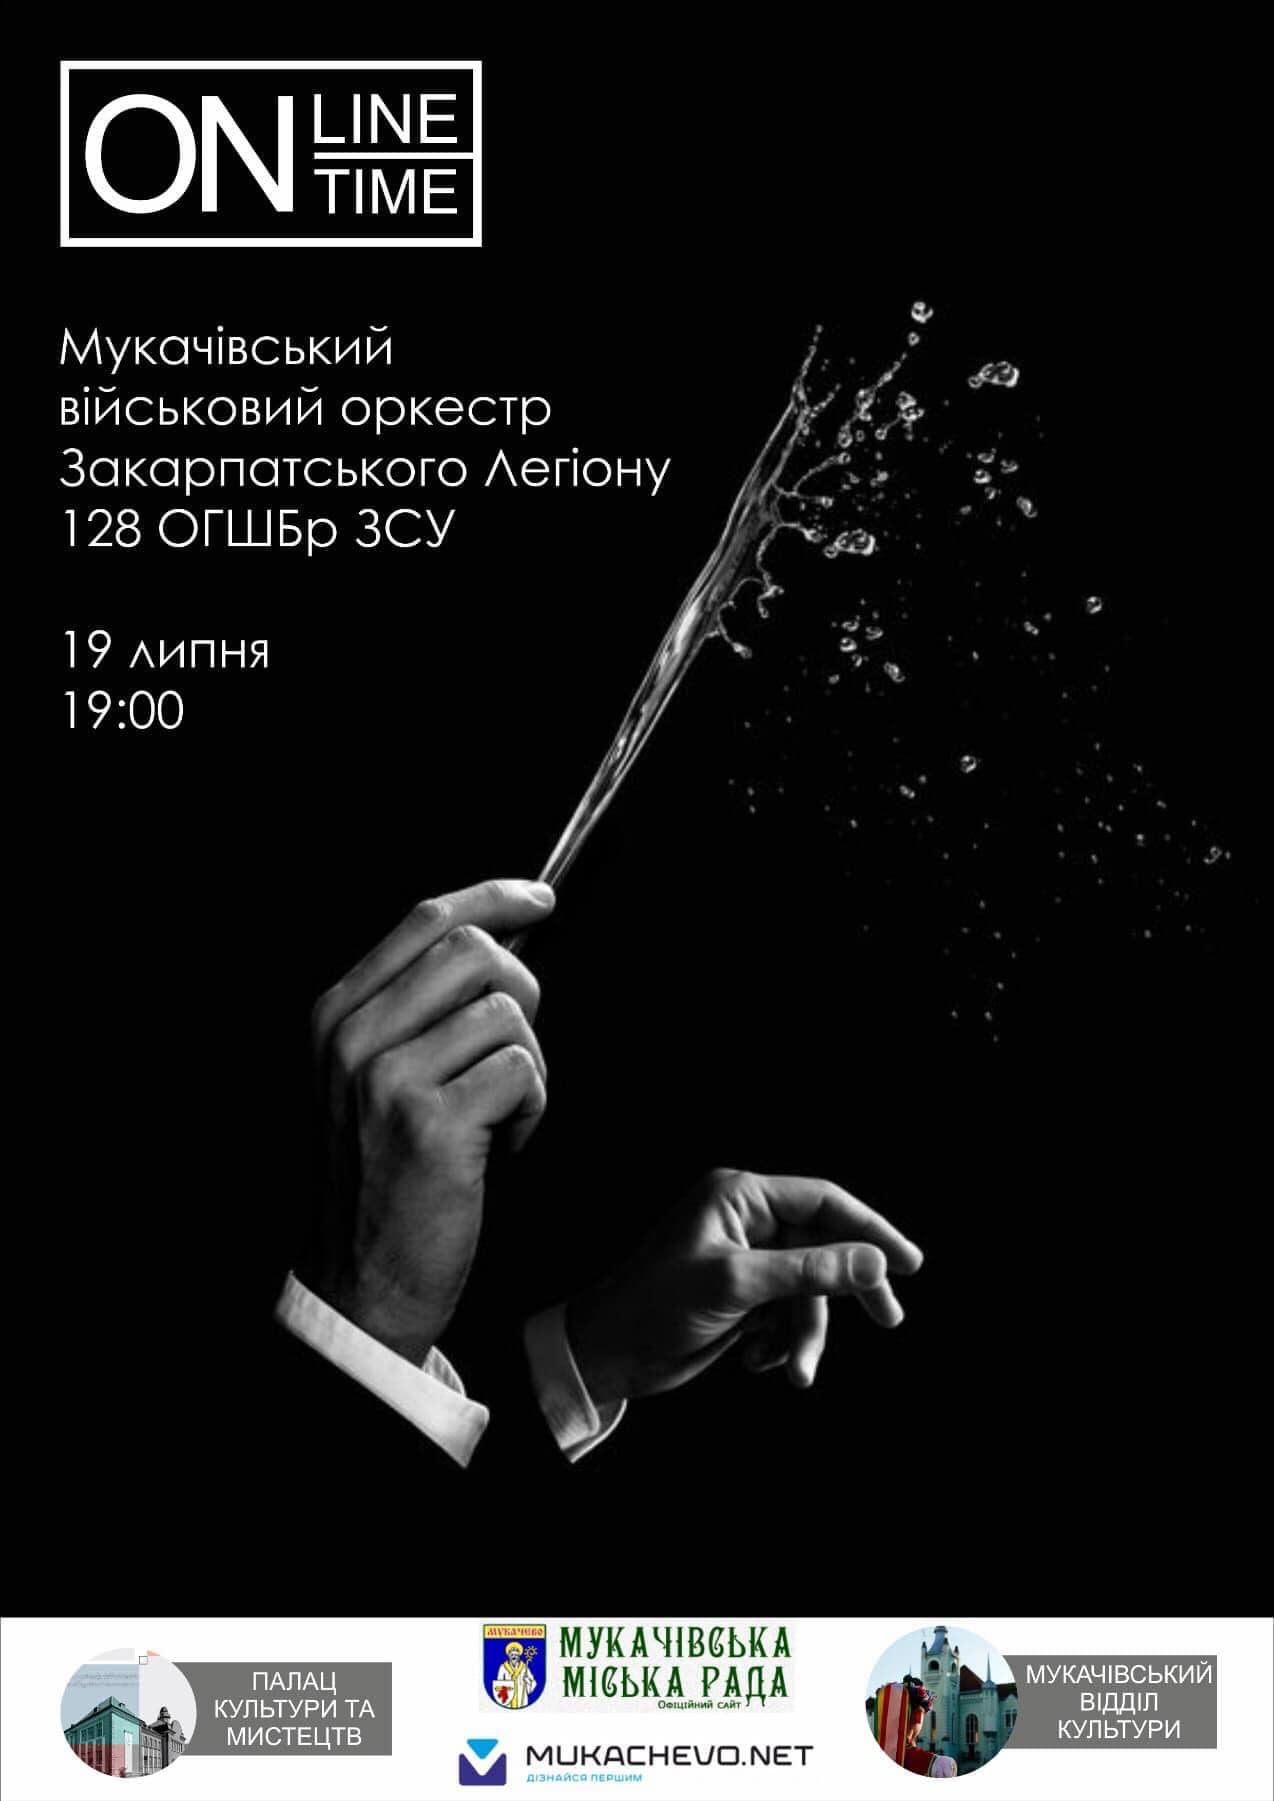 Сьогодні відбудеться онлайн концерт Мукачівського військового оркестру